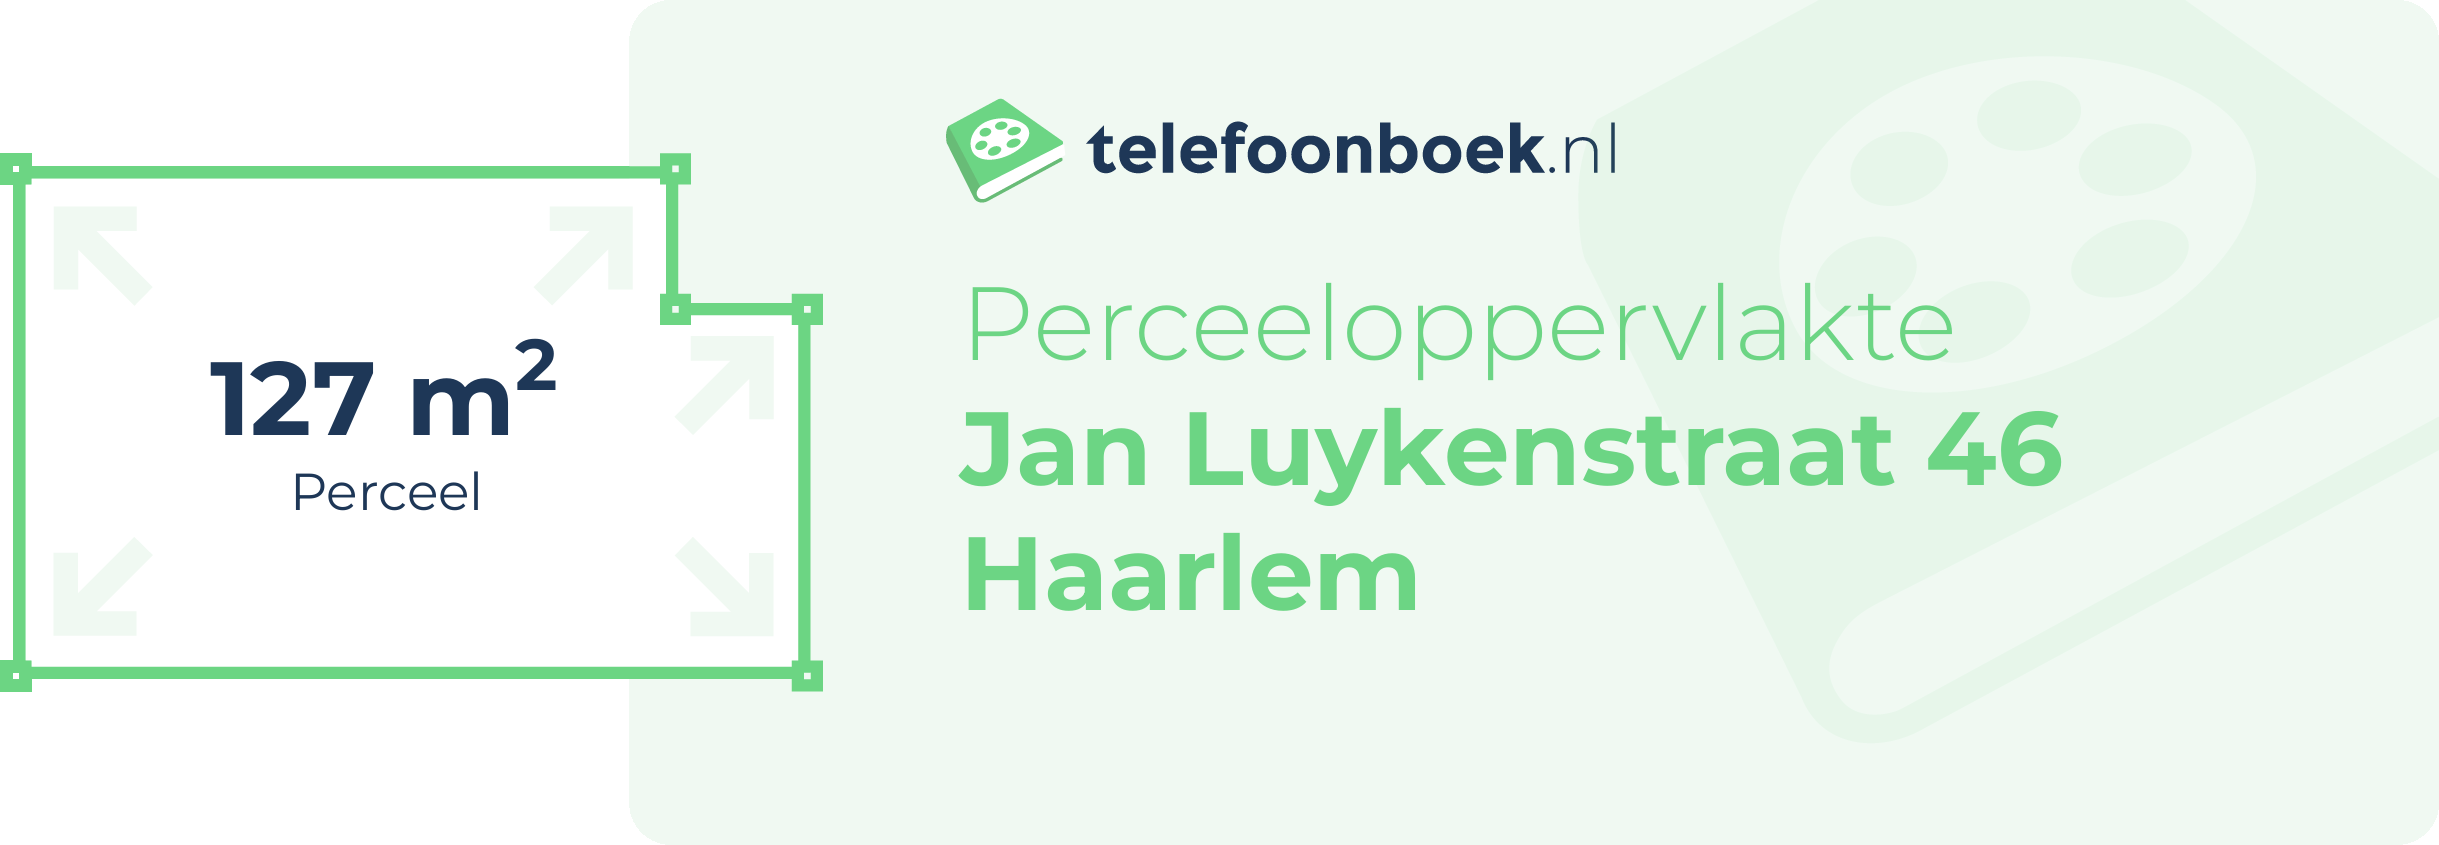 Perceeloppervlakte Jan Luykenstraat 46 Haarlem